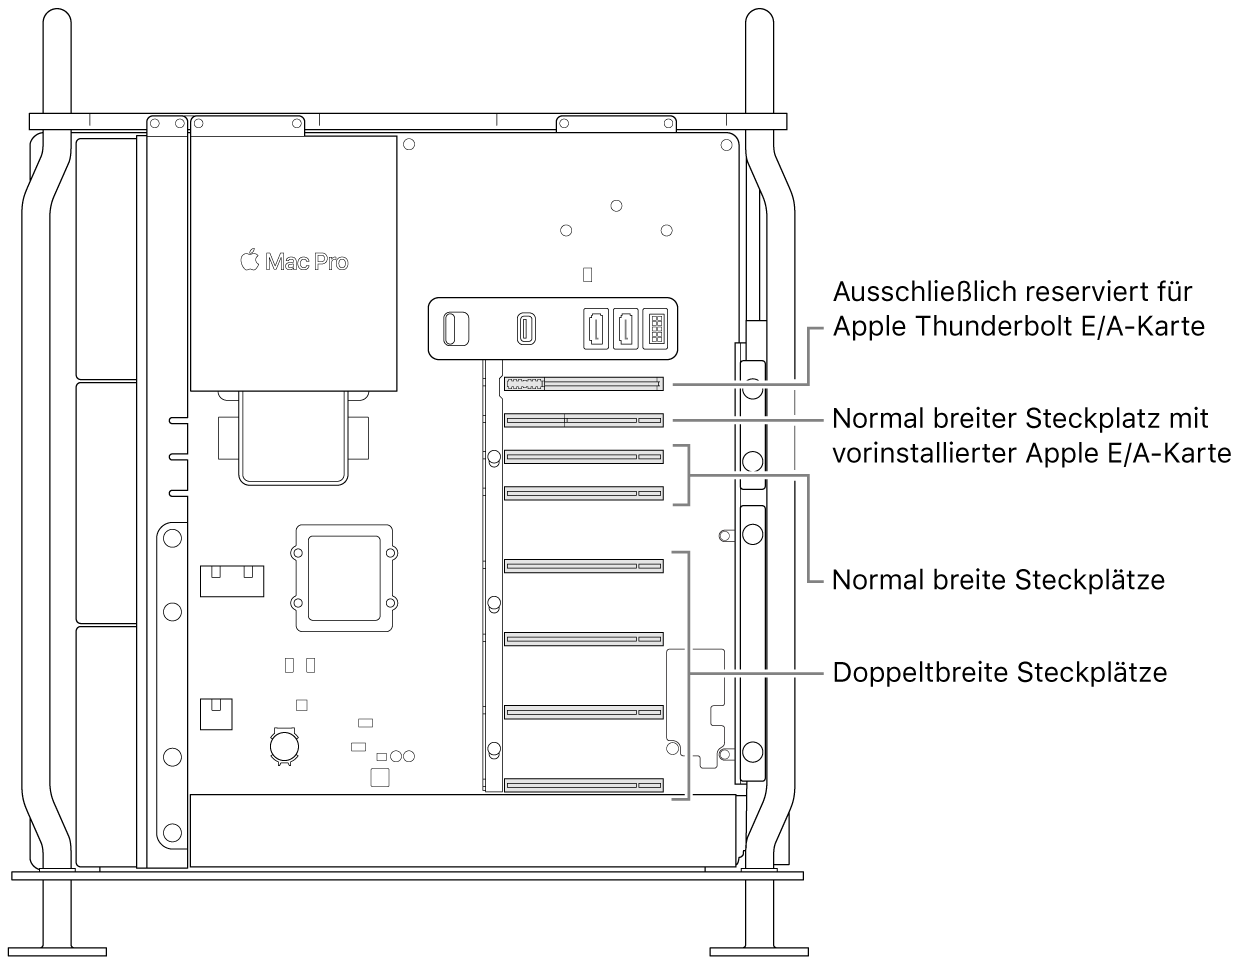 Seitenansicht des geöffneten Mac Pro mit Beschreibungen zu den Steckplatzpositionen: vier Steckplätze mit doppelter Breite, zwei Steckplätze mit einfacher Breite, ein Steckplatz mit einfacher Breite für die E/A-Karte von Apple und ein Steckplatz für die Thunderbolt E/A-Platine.